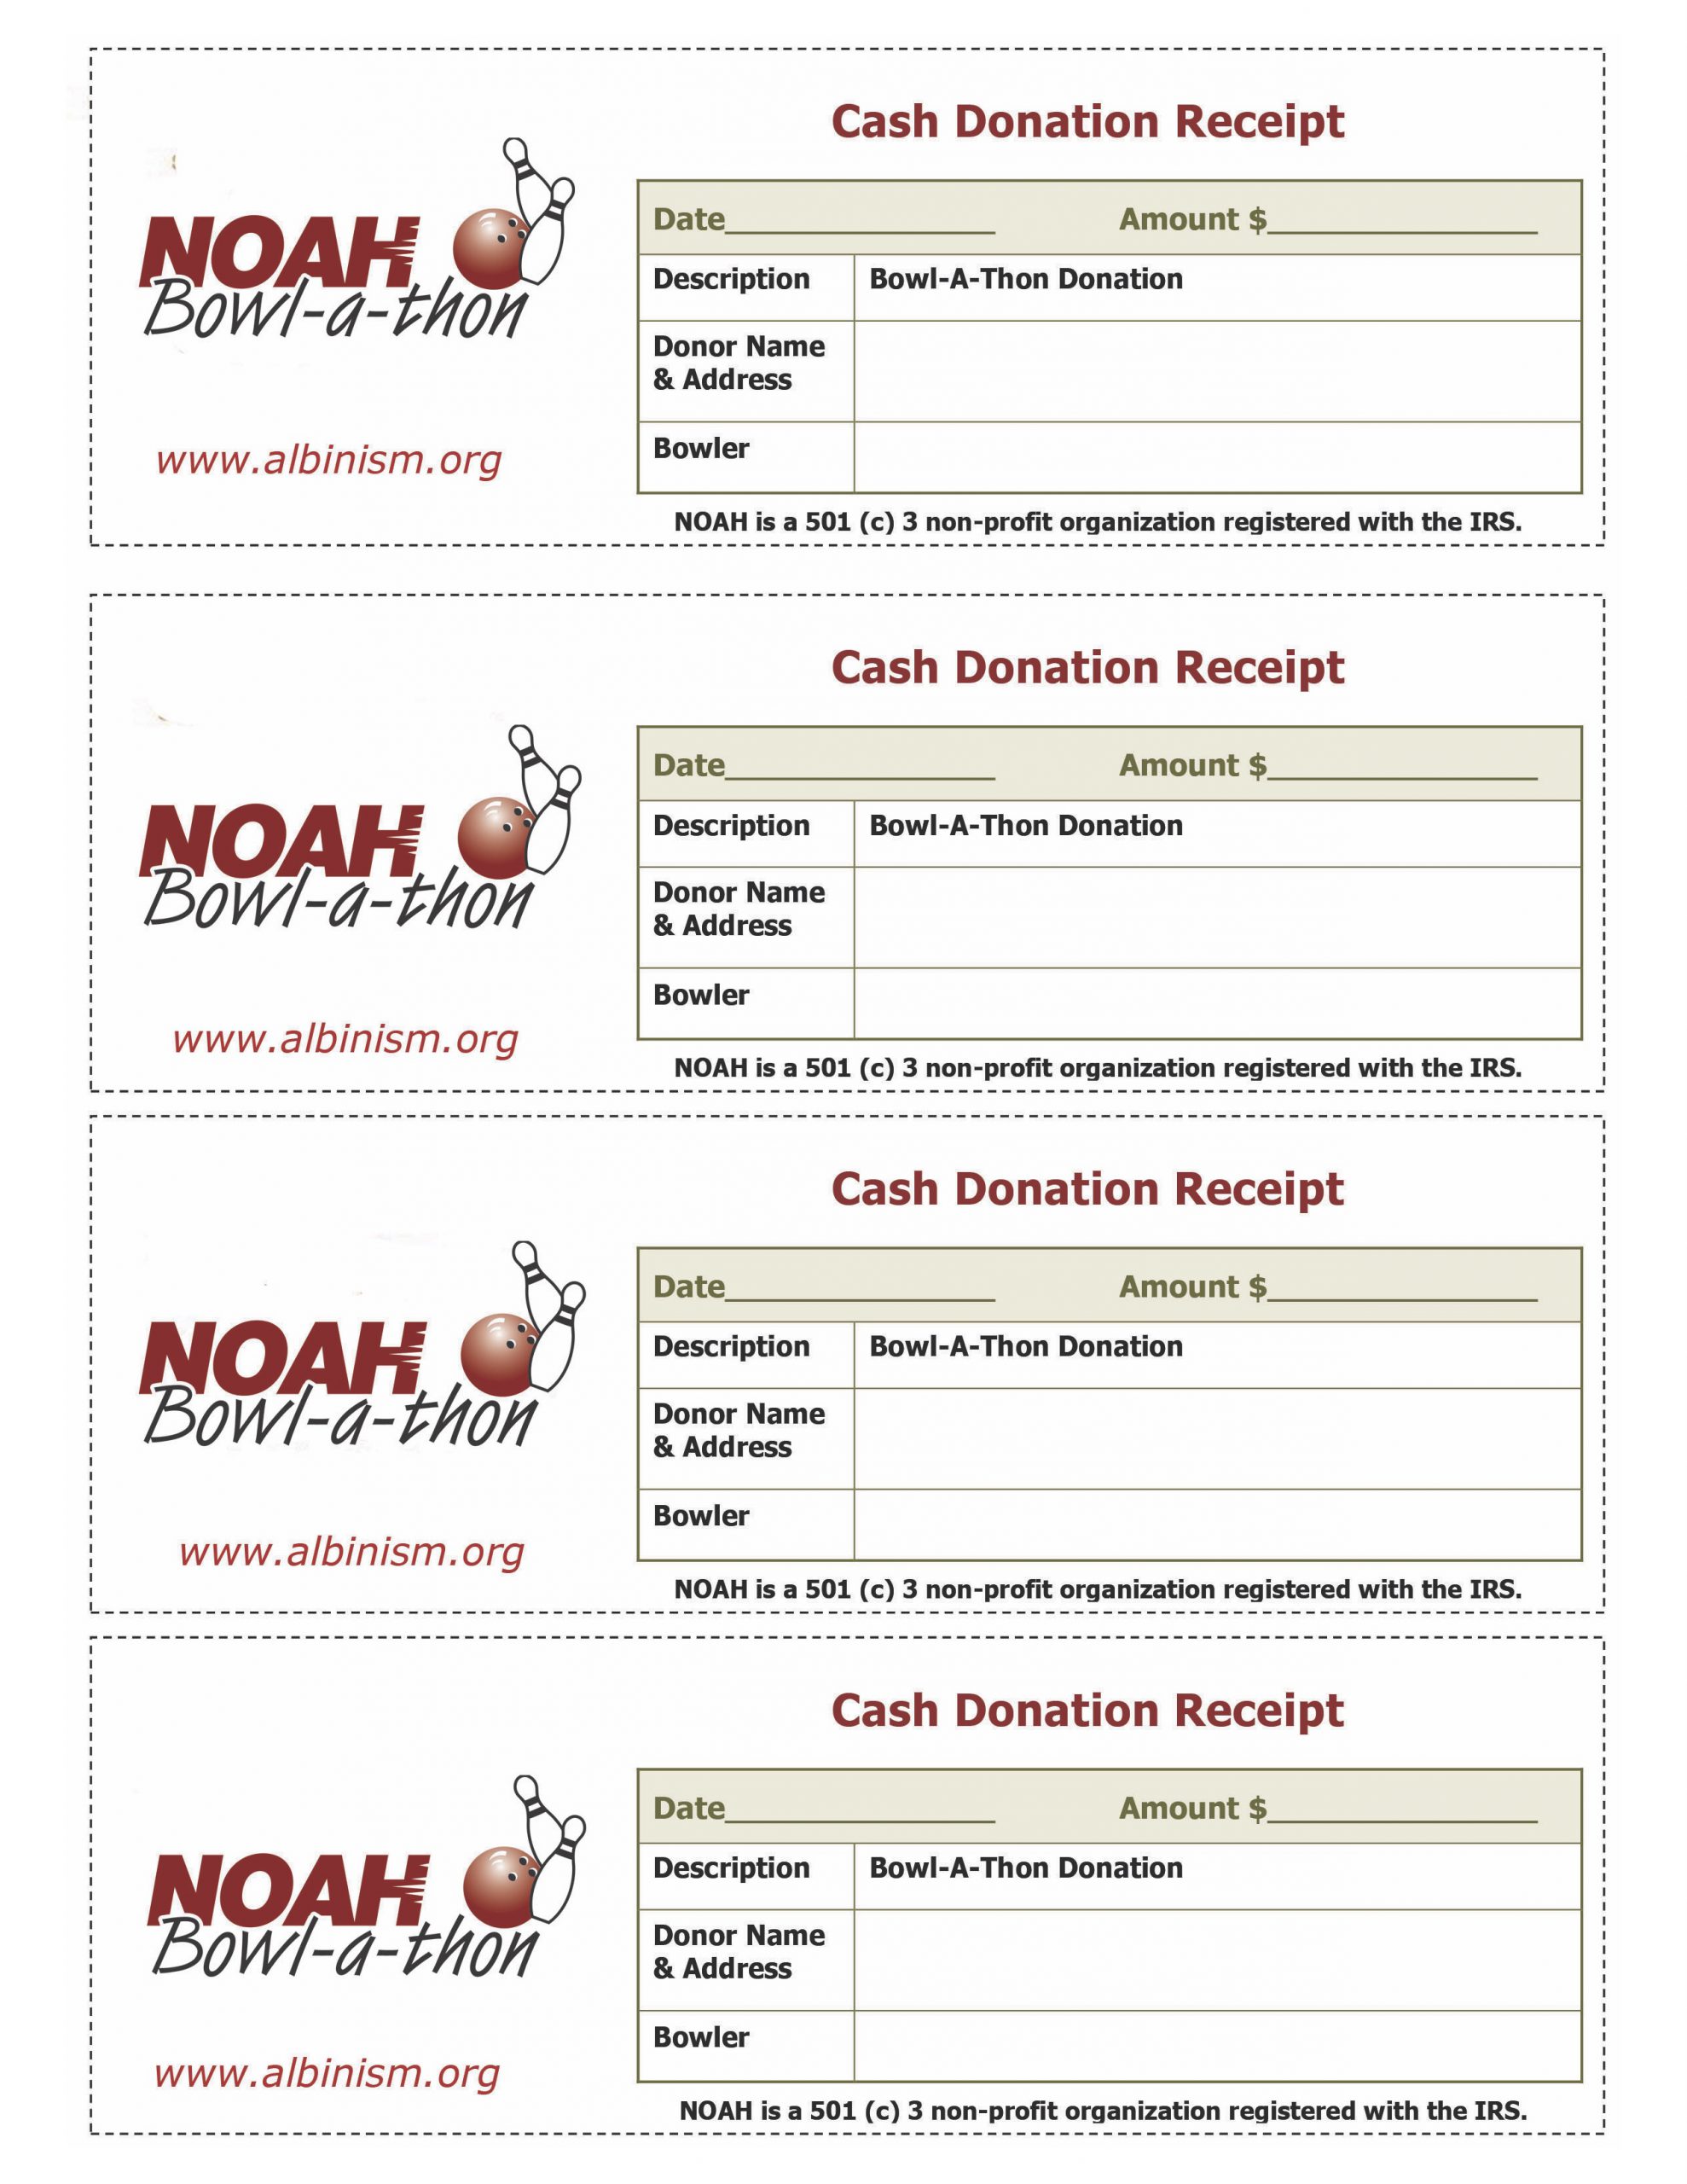 Bowl-a-thon Fundraiser Cash Donation Receipt